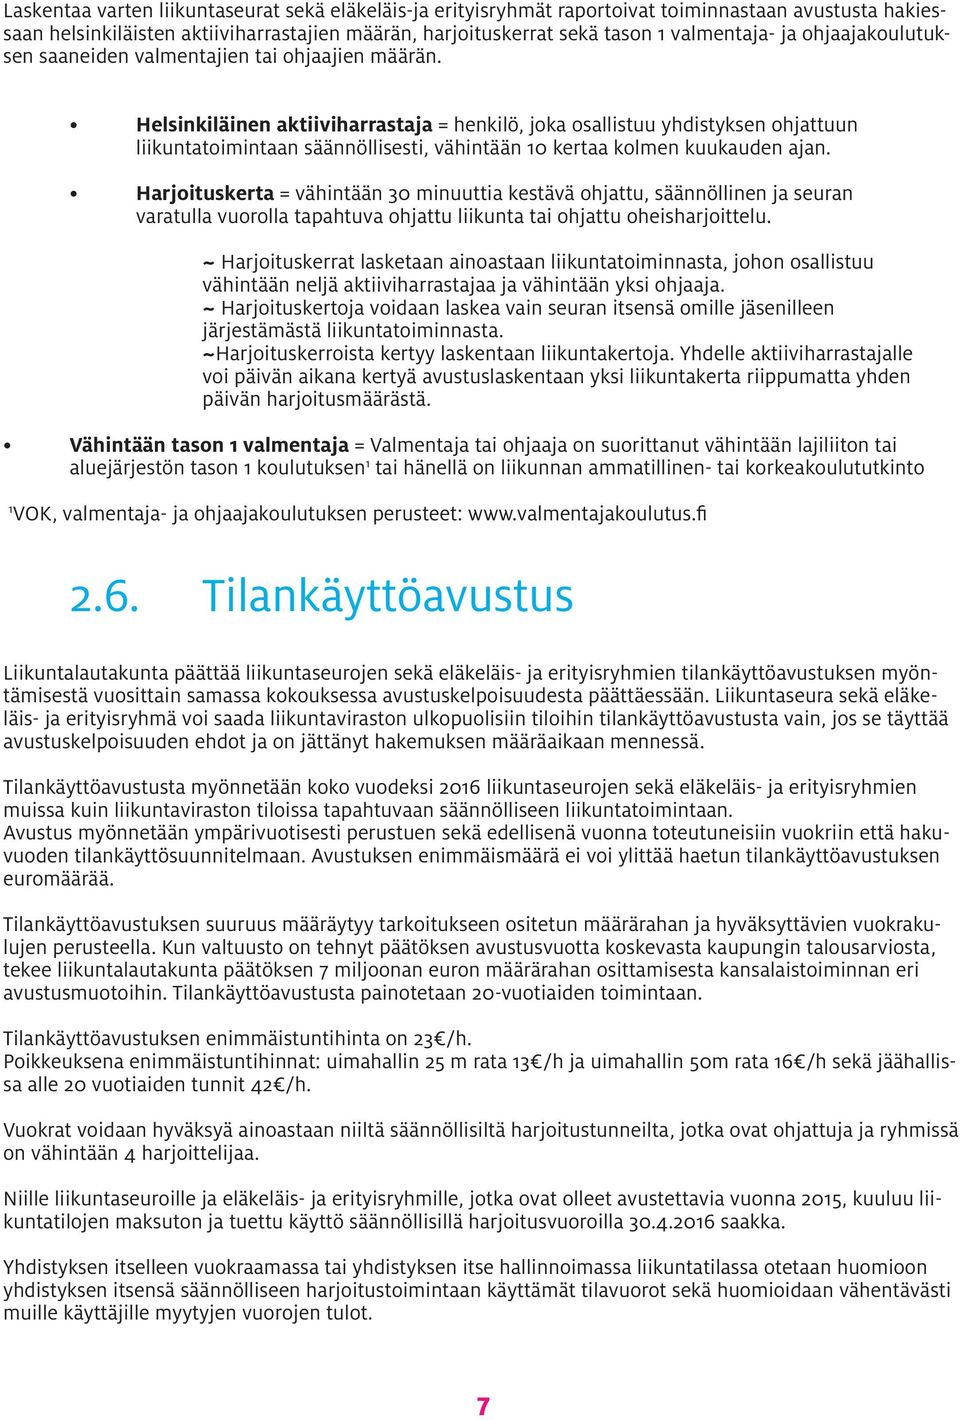 Helsinkiläinen aktiiviharrastaja = henkilö, joka osallistuu yhdistyksen ohjattuun liikuntatoimintaan säännöllisesti, vähintään 10 kertaa kolmen kuukauden ajan.